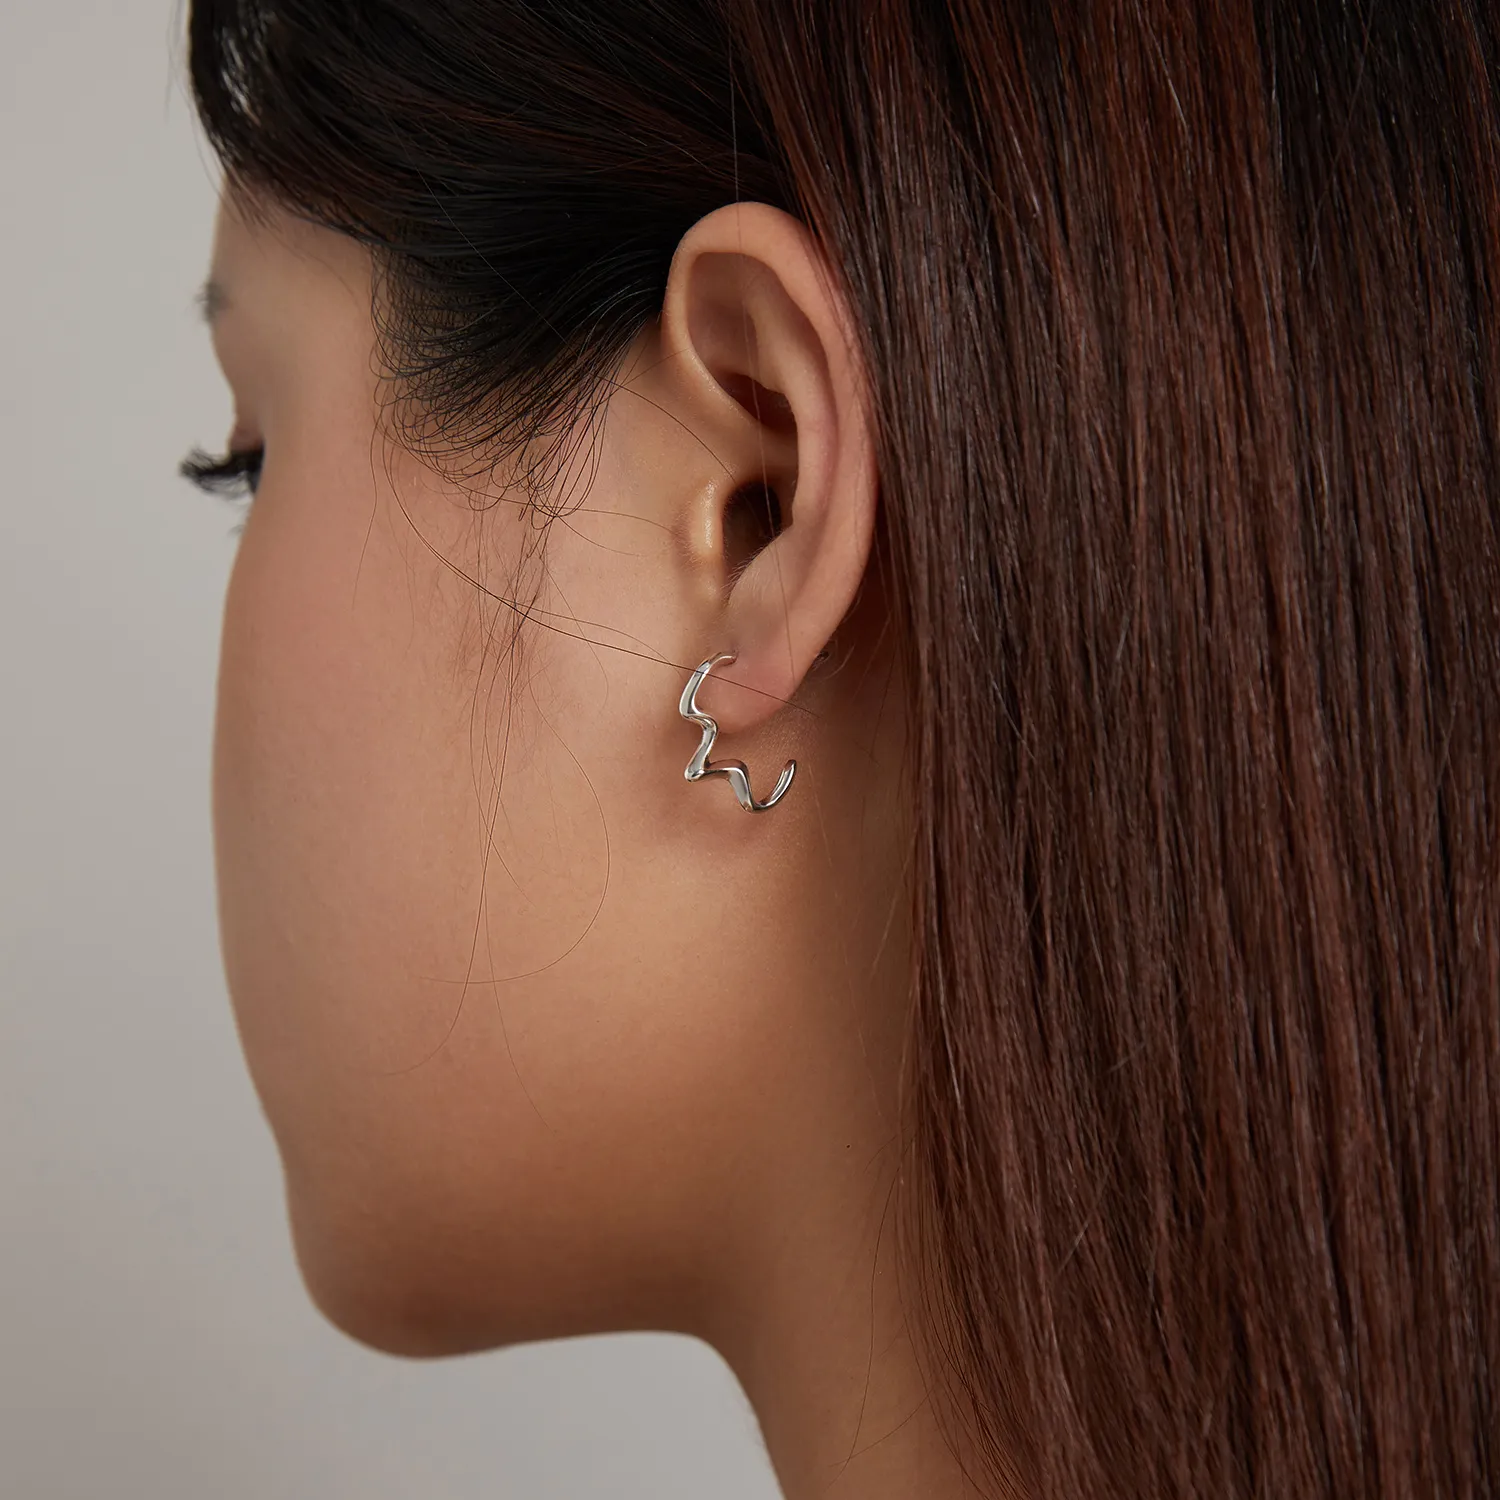 Stud Earrings în stilul Pandora, inspirate de valurile verii - SCE1196